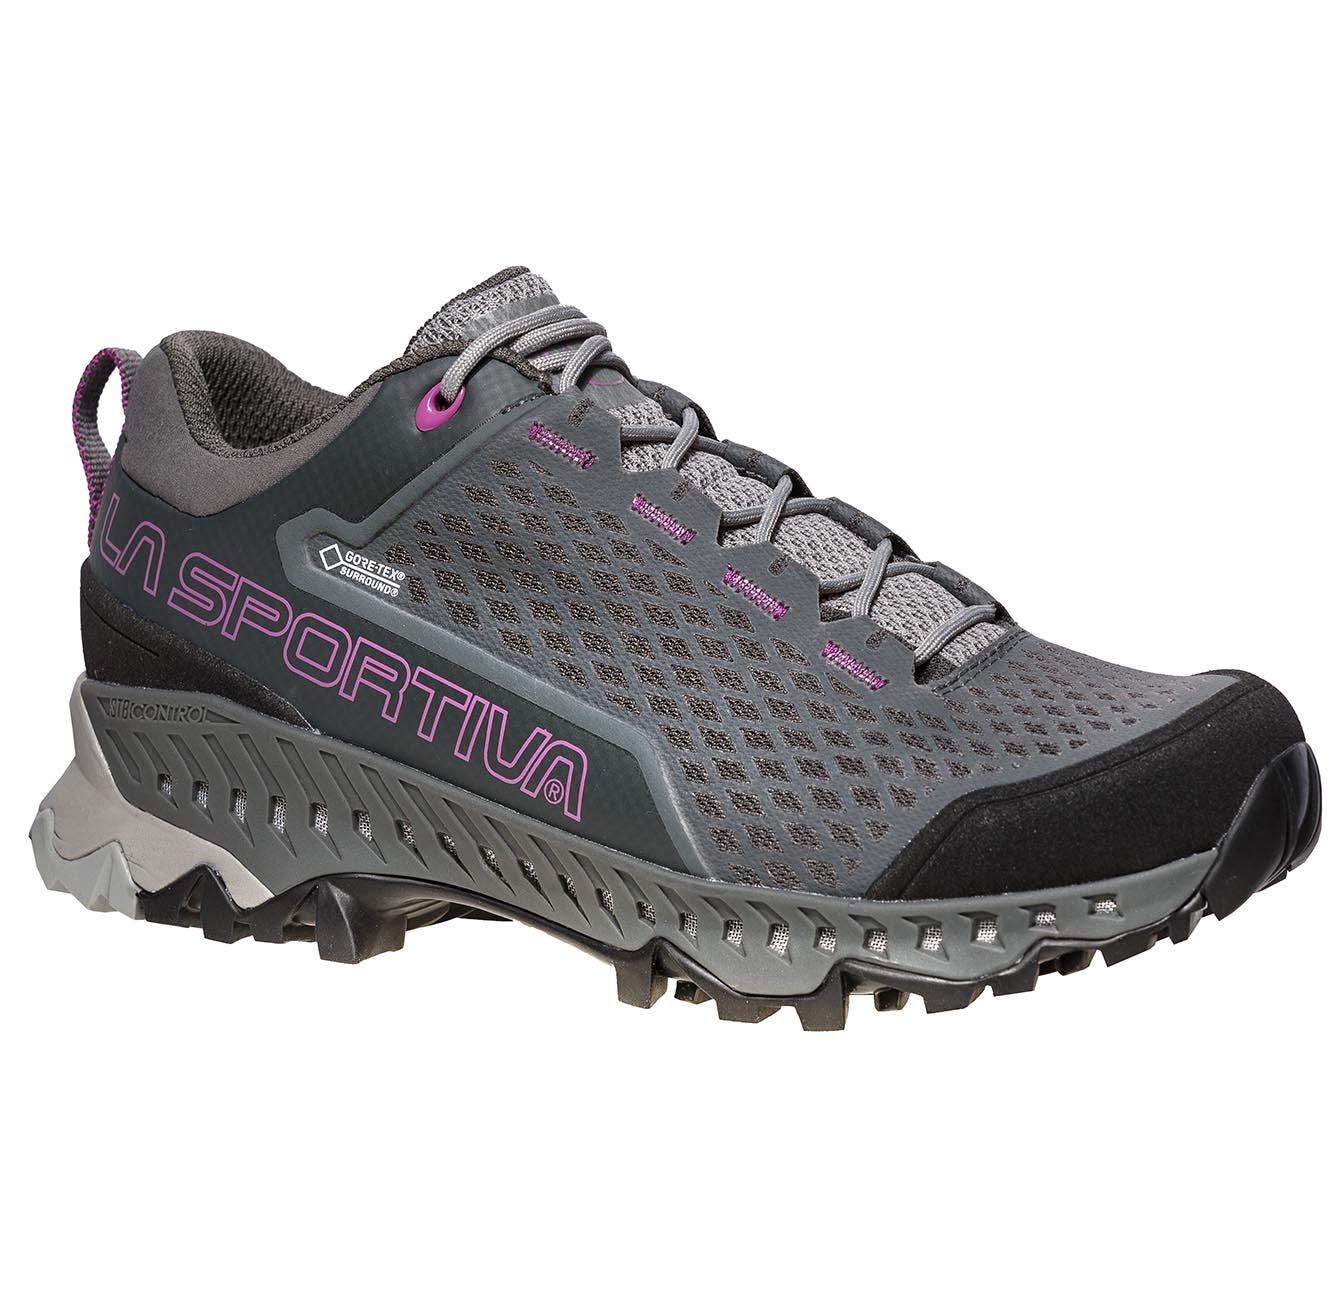 Chaussures randonnées Spire Woman GTX - carbon/purple